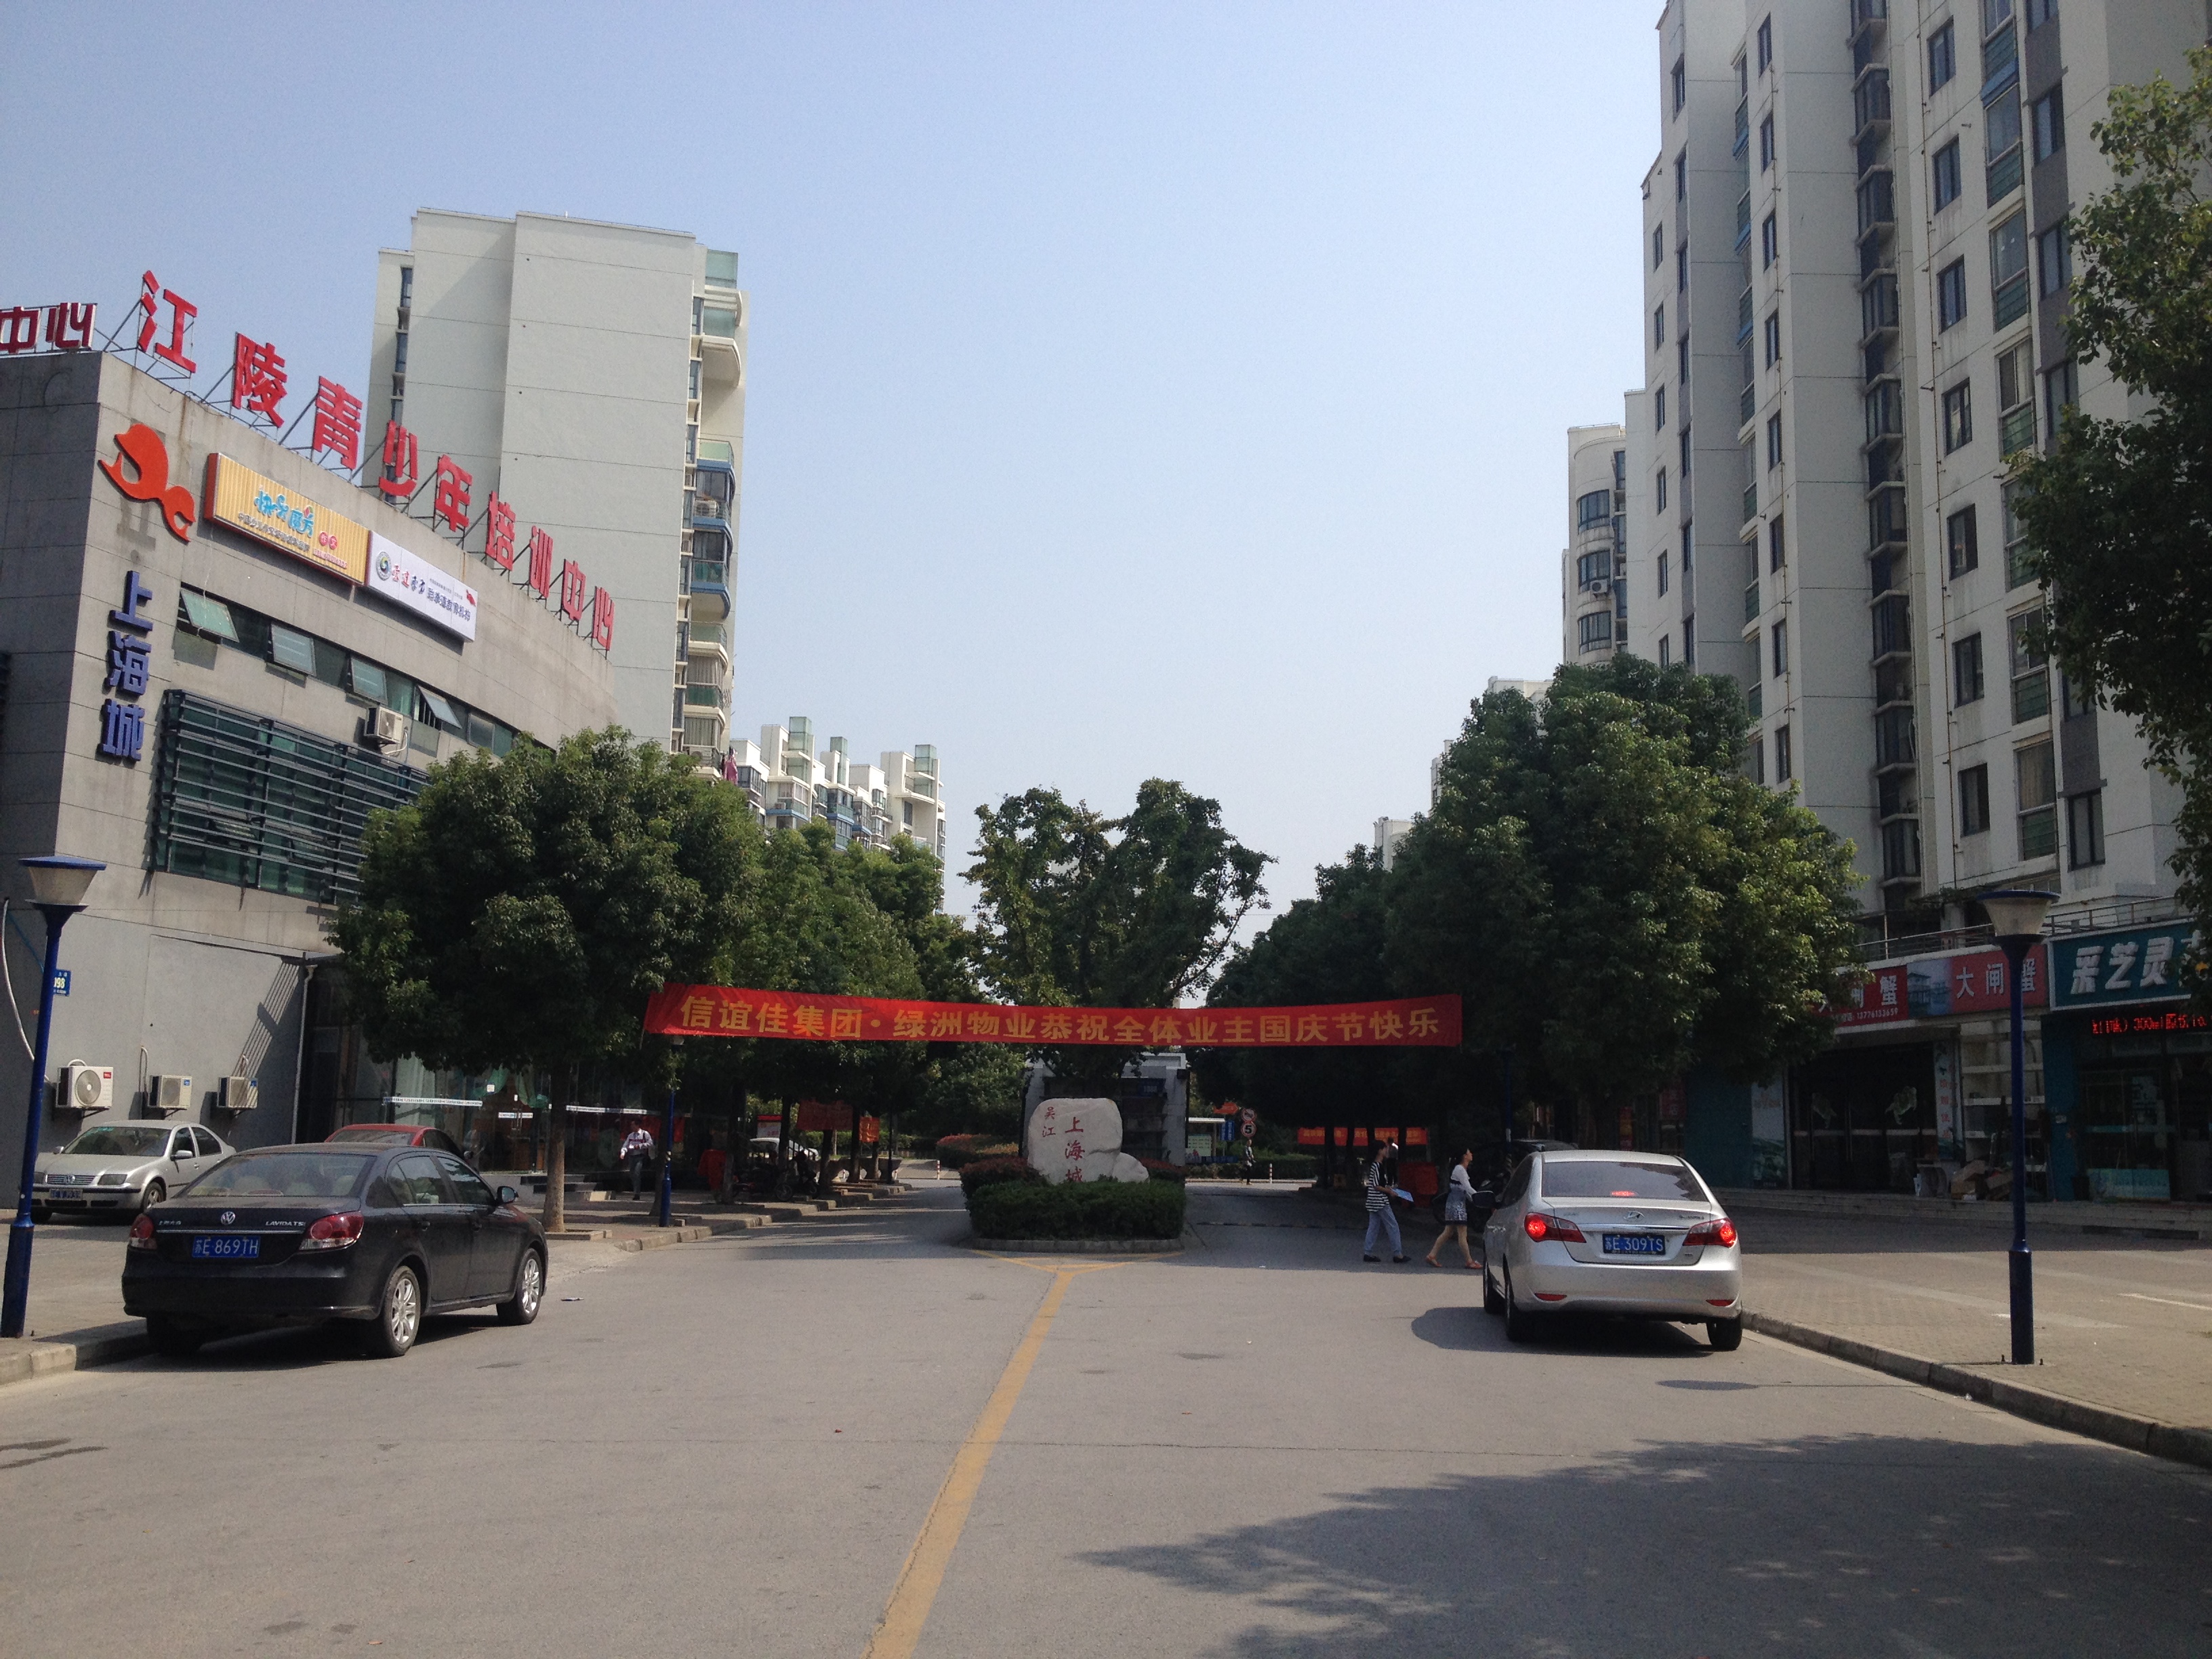 上海城 2室2厅1卫 95平方米 1000元/月出租